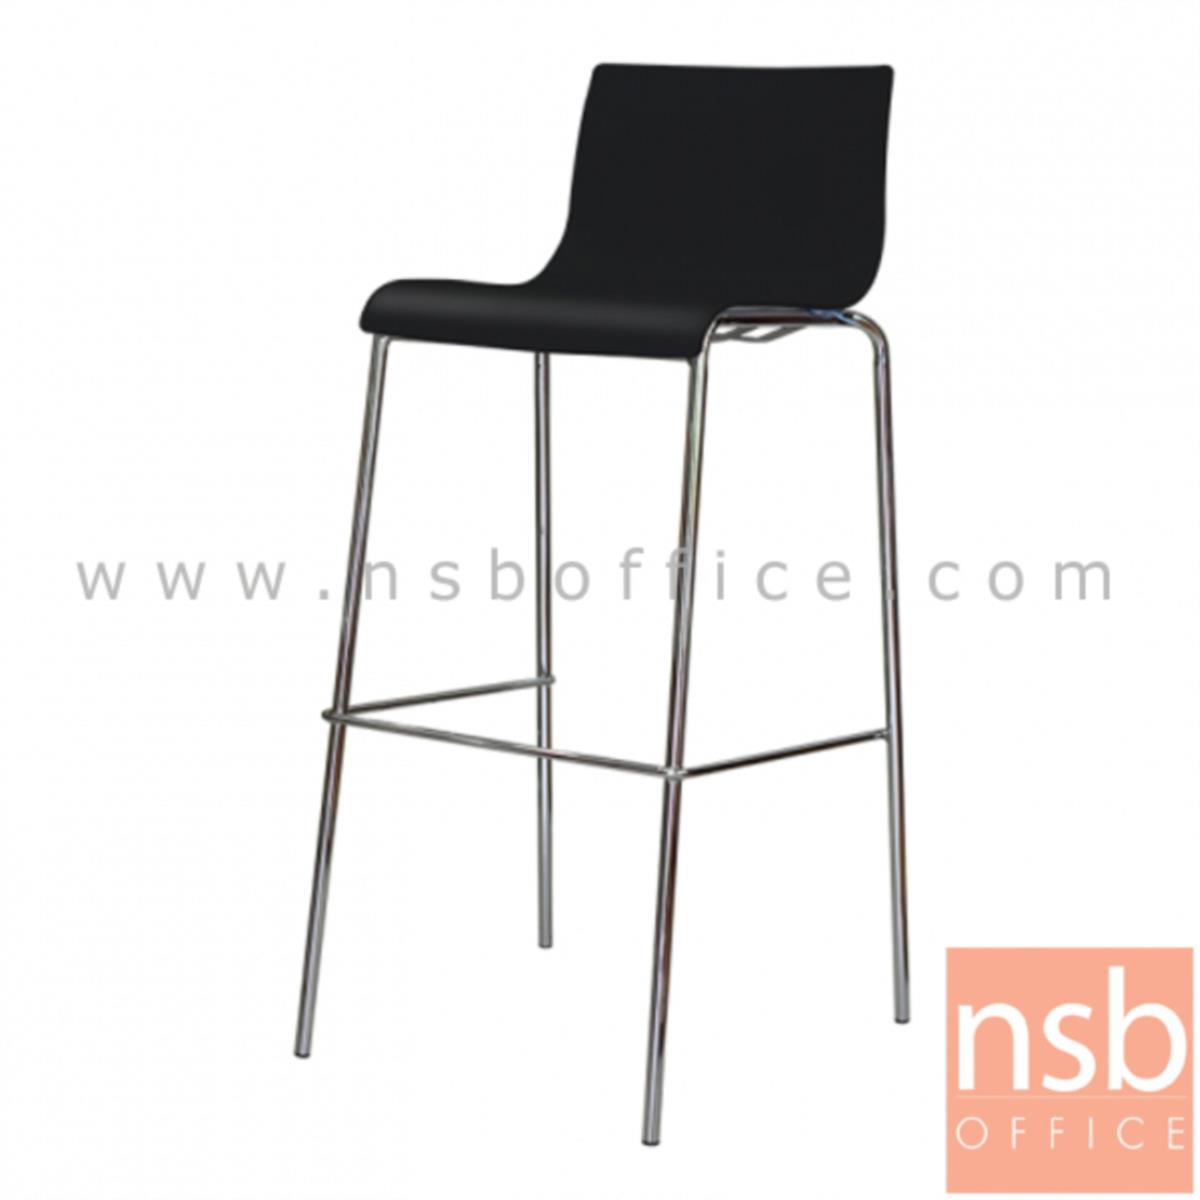 B09A191:เก้าอี้บาร์สูงโพลี่(PP) รุ่น NP-9200  ขาเหล็กชุบโครเมี่ยม